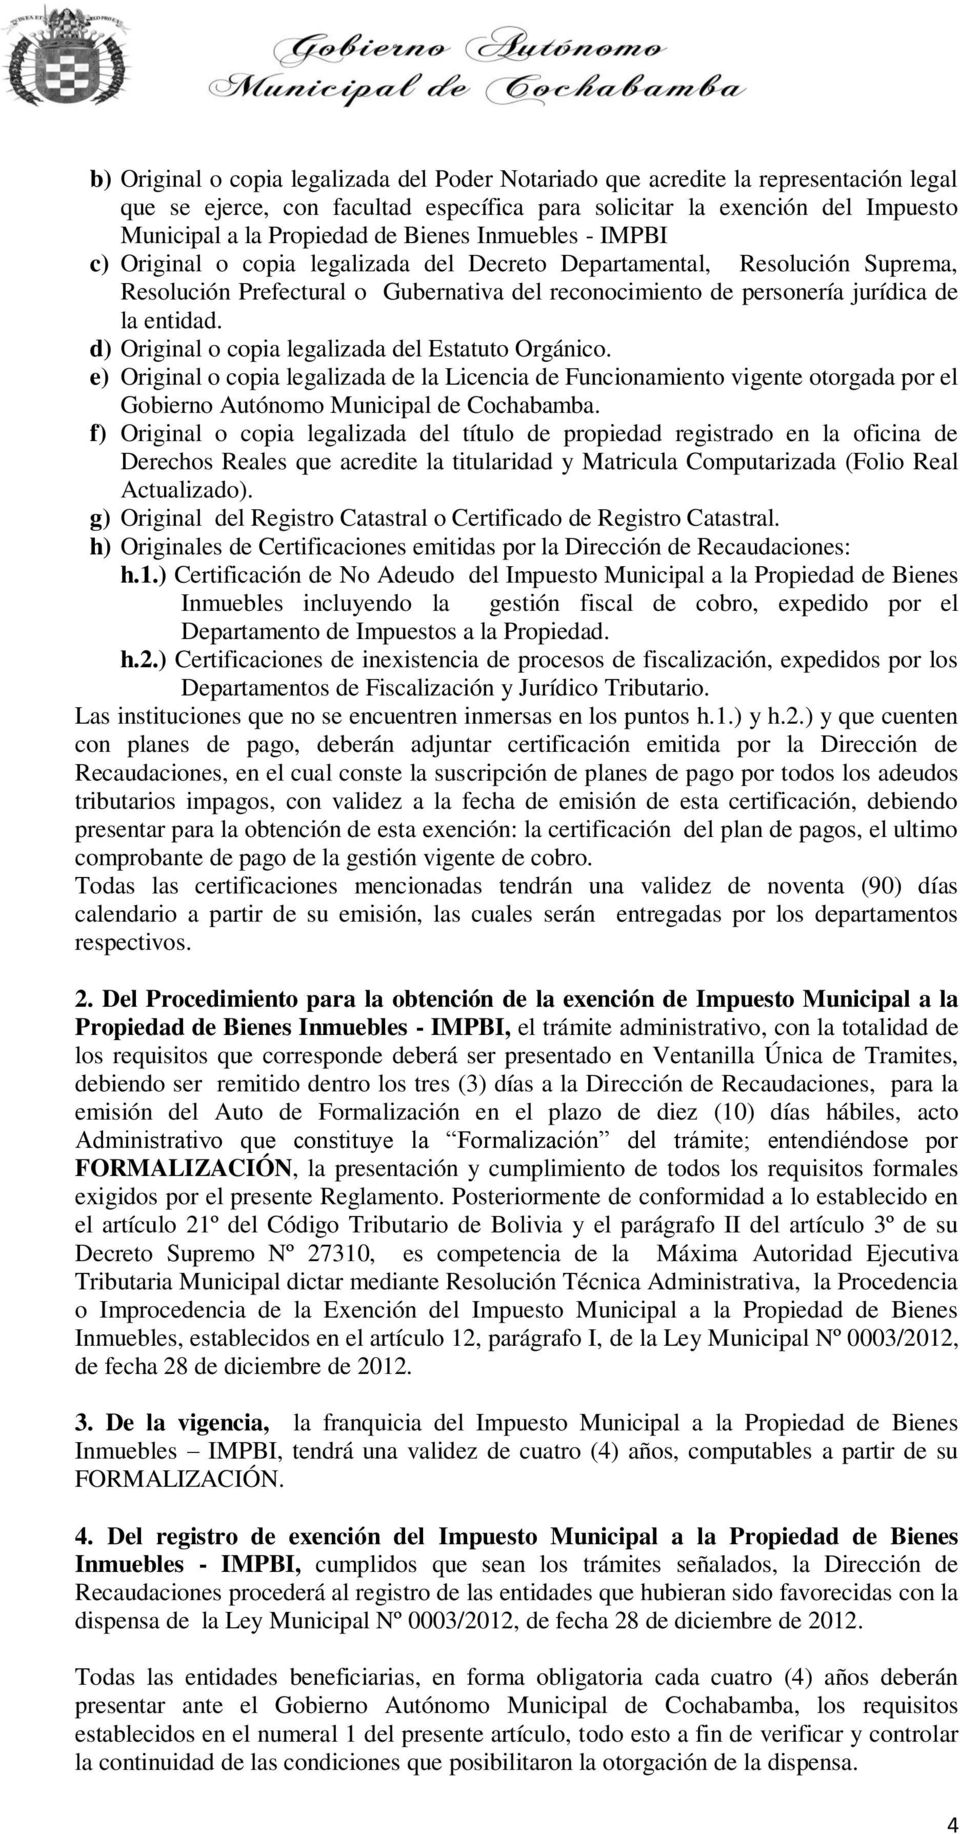 d) Original o copia legalizada del Estatuto Orgánico. e) Original o copia legalizada de la Licencia de Funcionamiento vigente otorgada por el Gobierno Autónomo Municipal de Cochabamba.